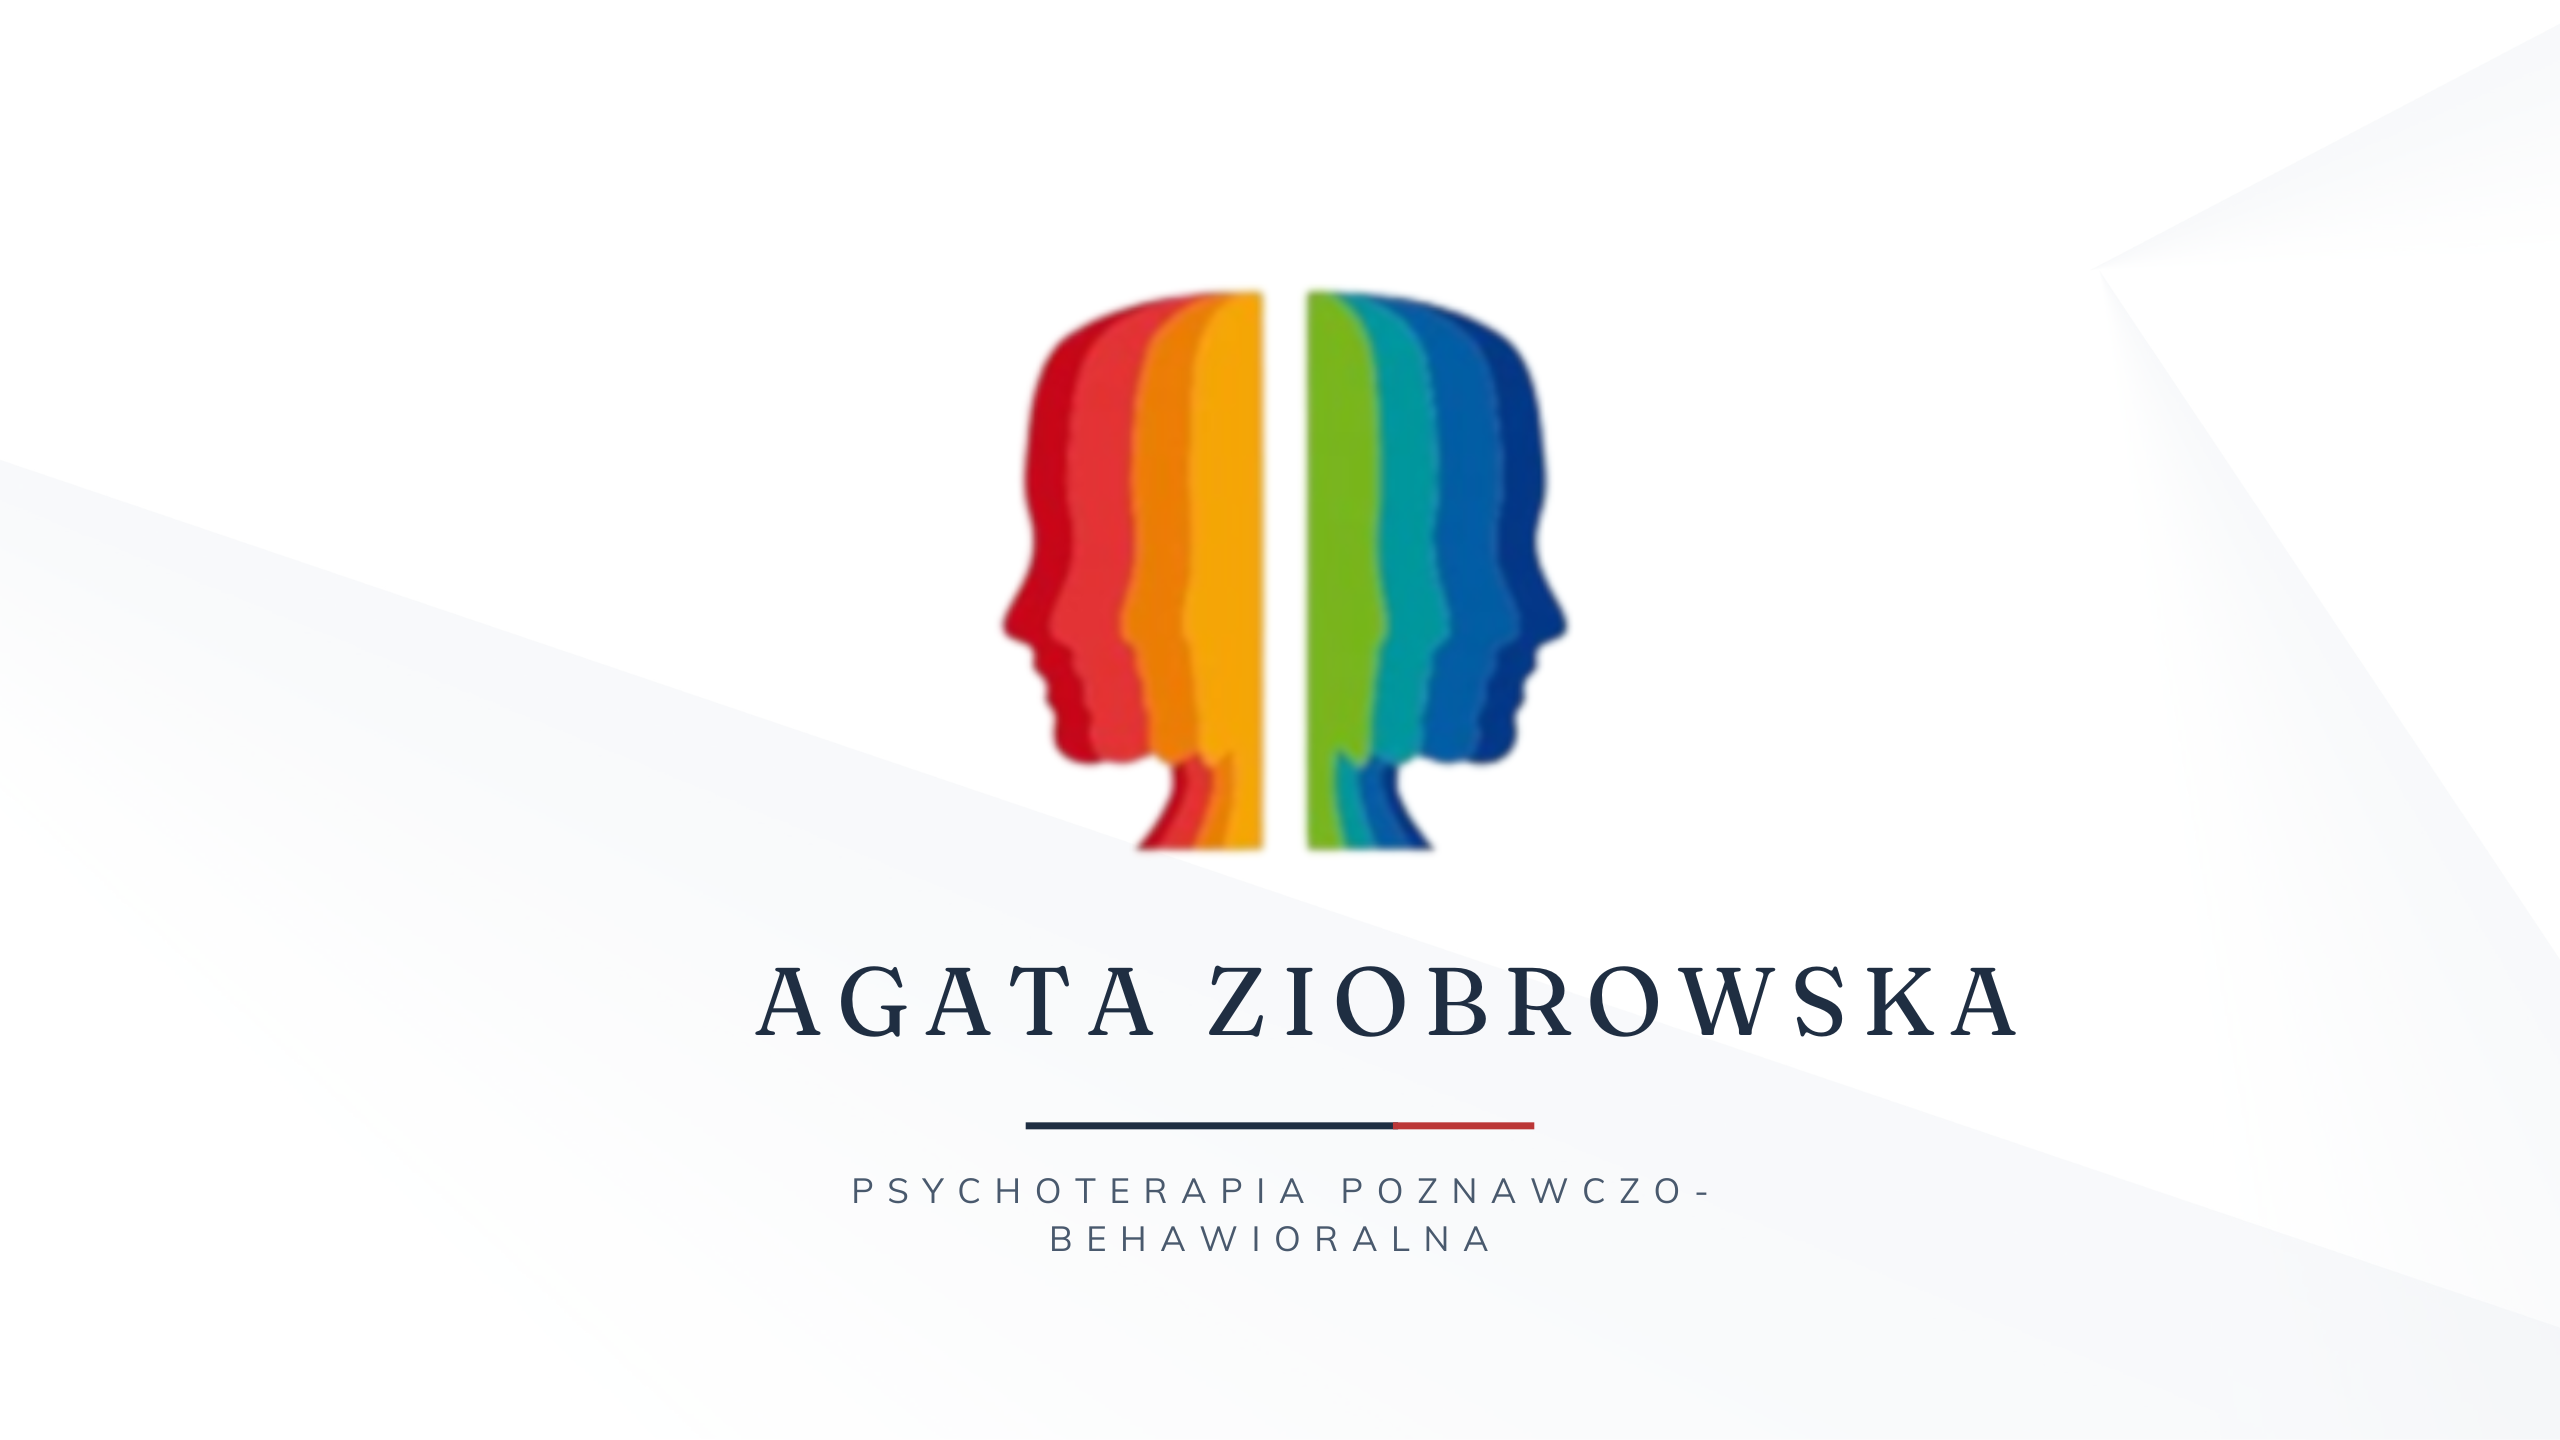 Agata Ziobrowska psychoterapia poznawczo-behawioralna